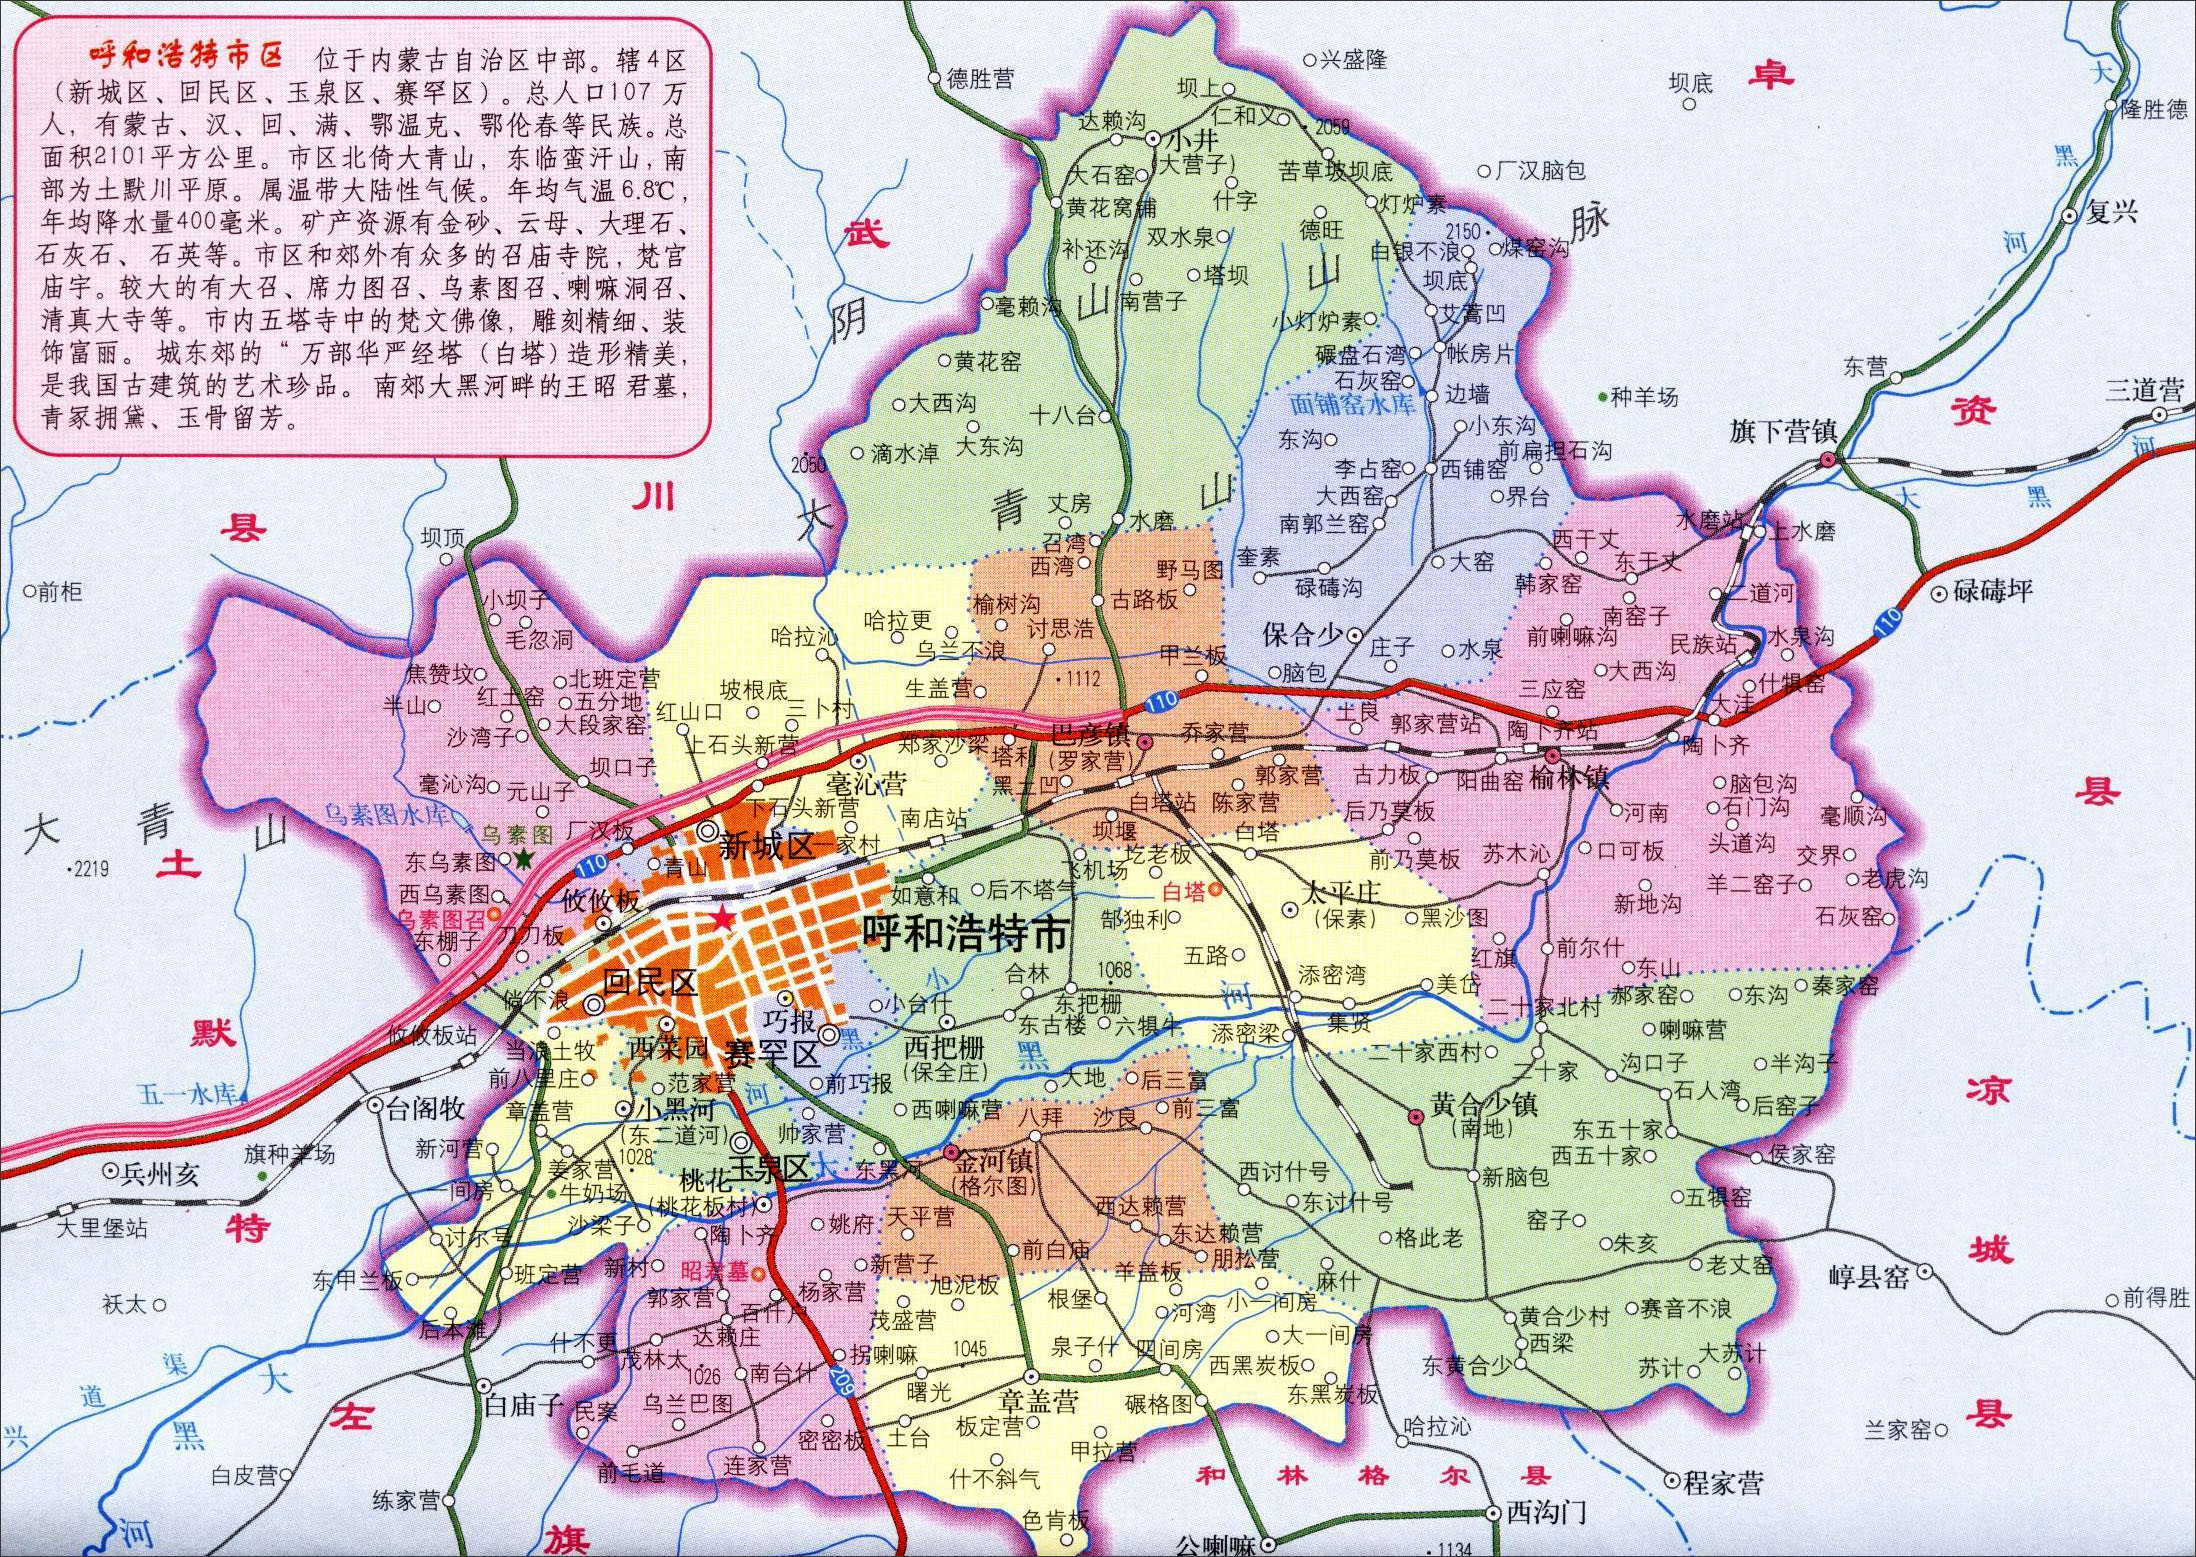 中国地图 内蒙古 呼和浩特 >> 呼和浩特市区地图  相关链接: 呼和浩特图片